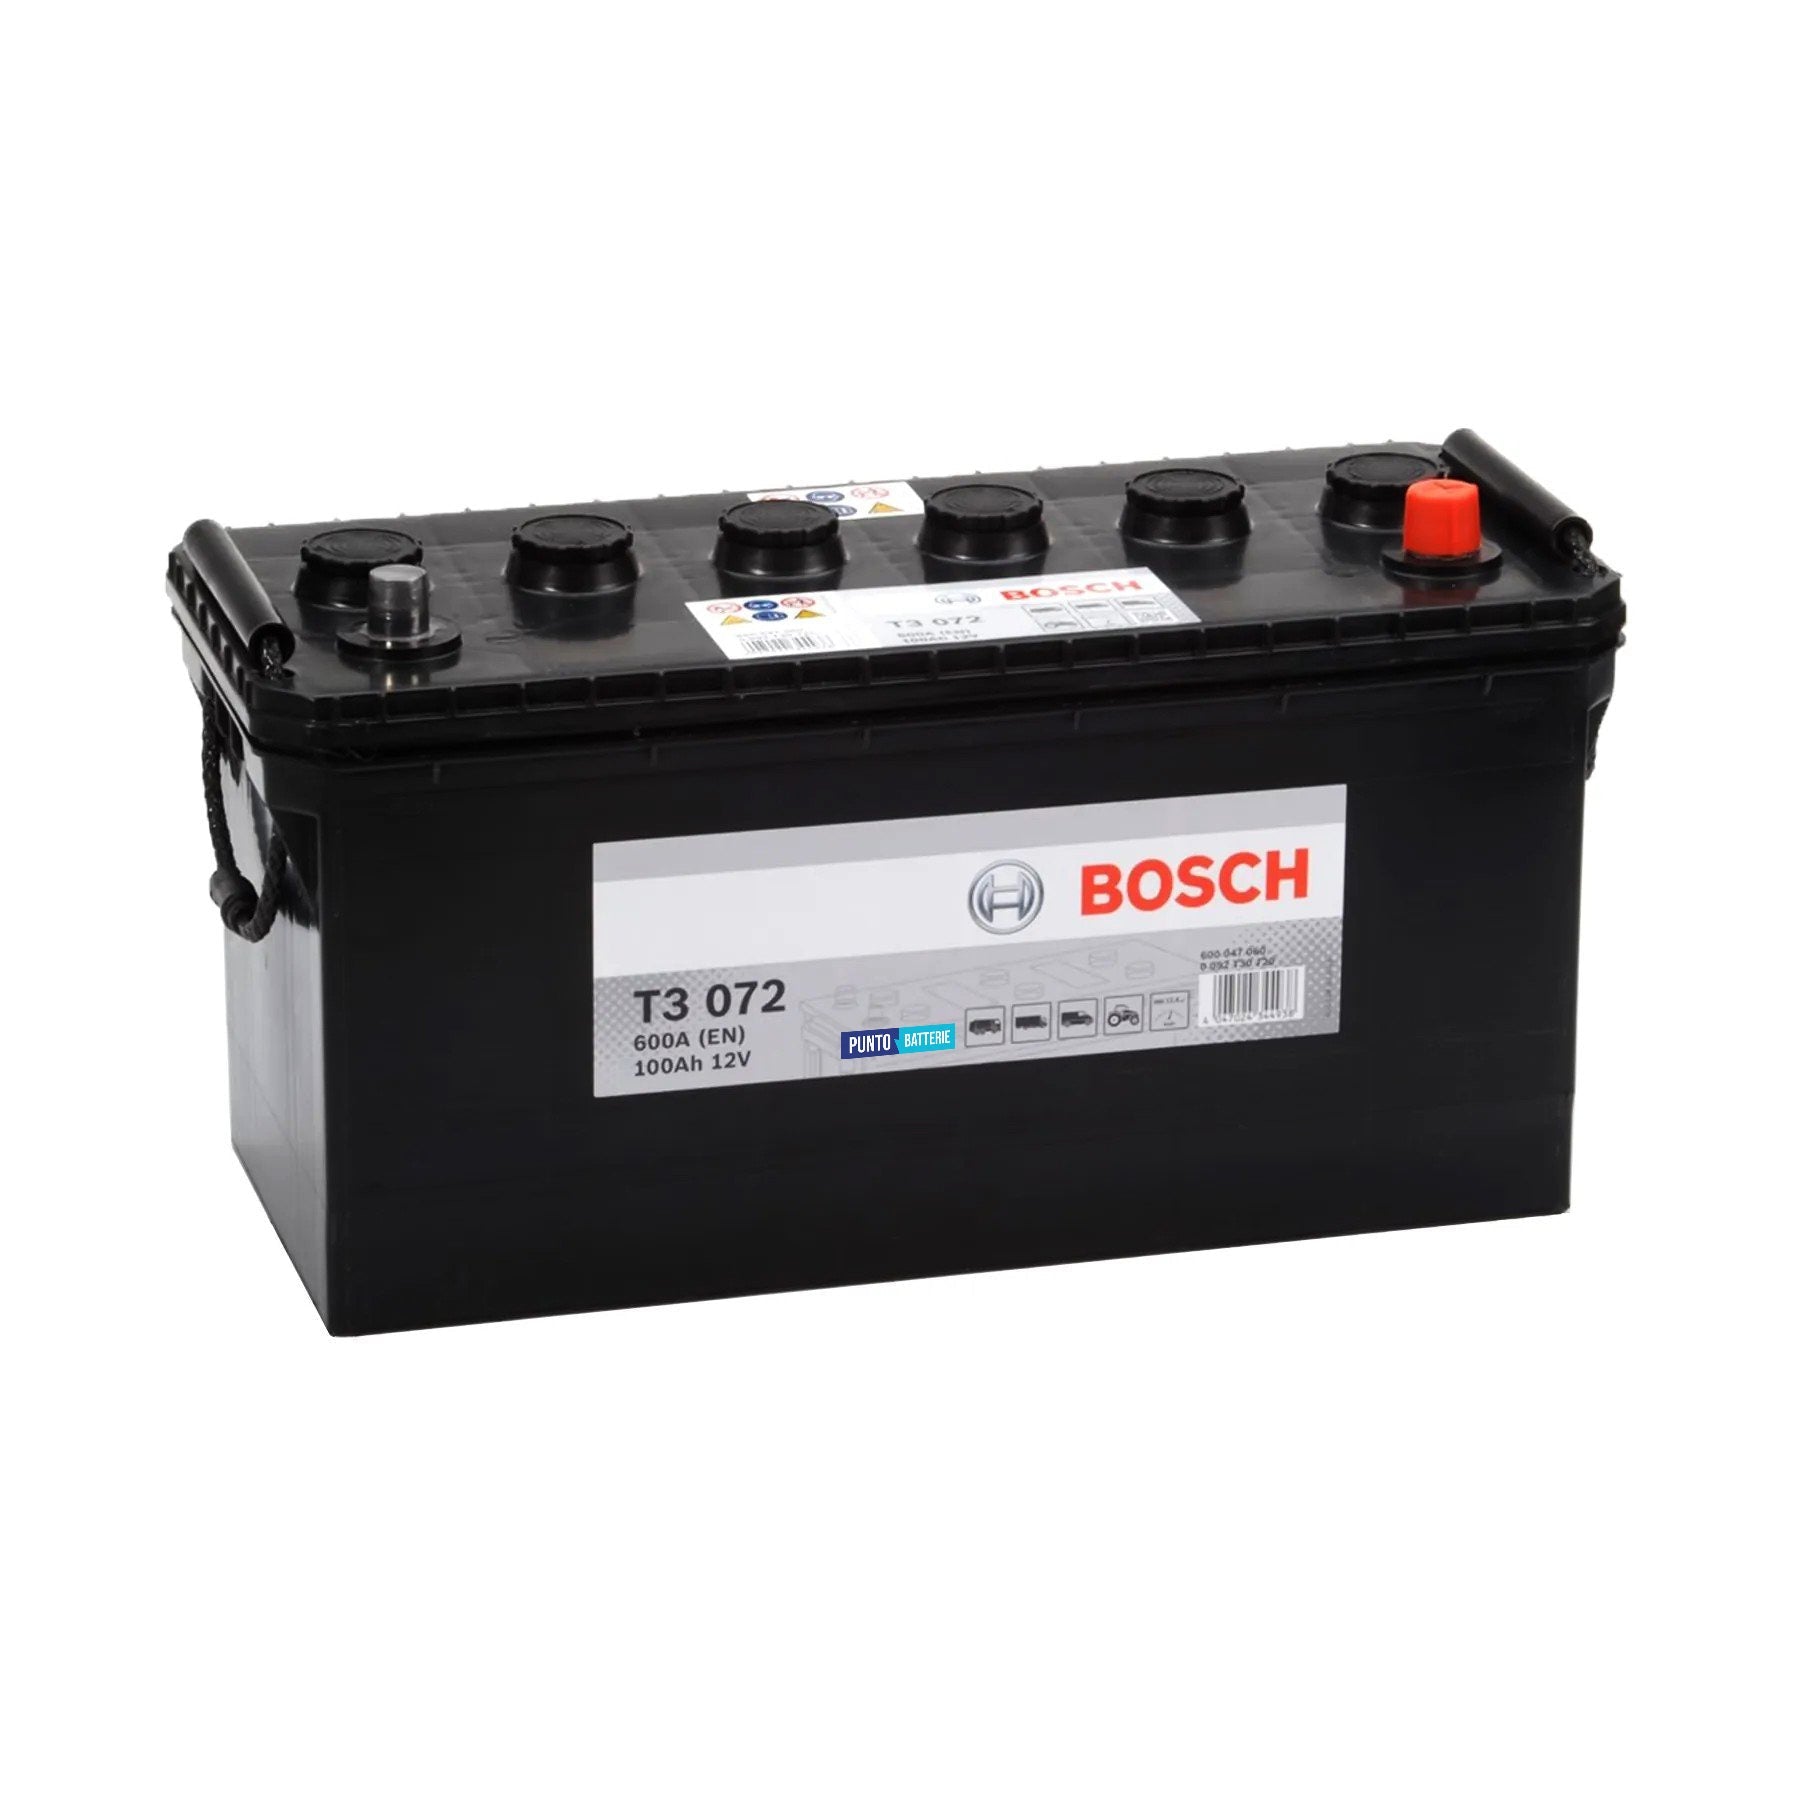 Batteria originale Bosch T3 T3072, dimensioni 412 x 175 x 219, polo positivo a destra, 12 volt, 100 amperora, 600 ampere. Batteria per camion e veicoli pesanti.